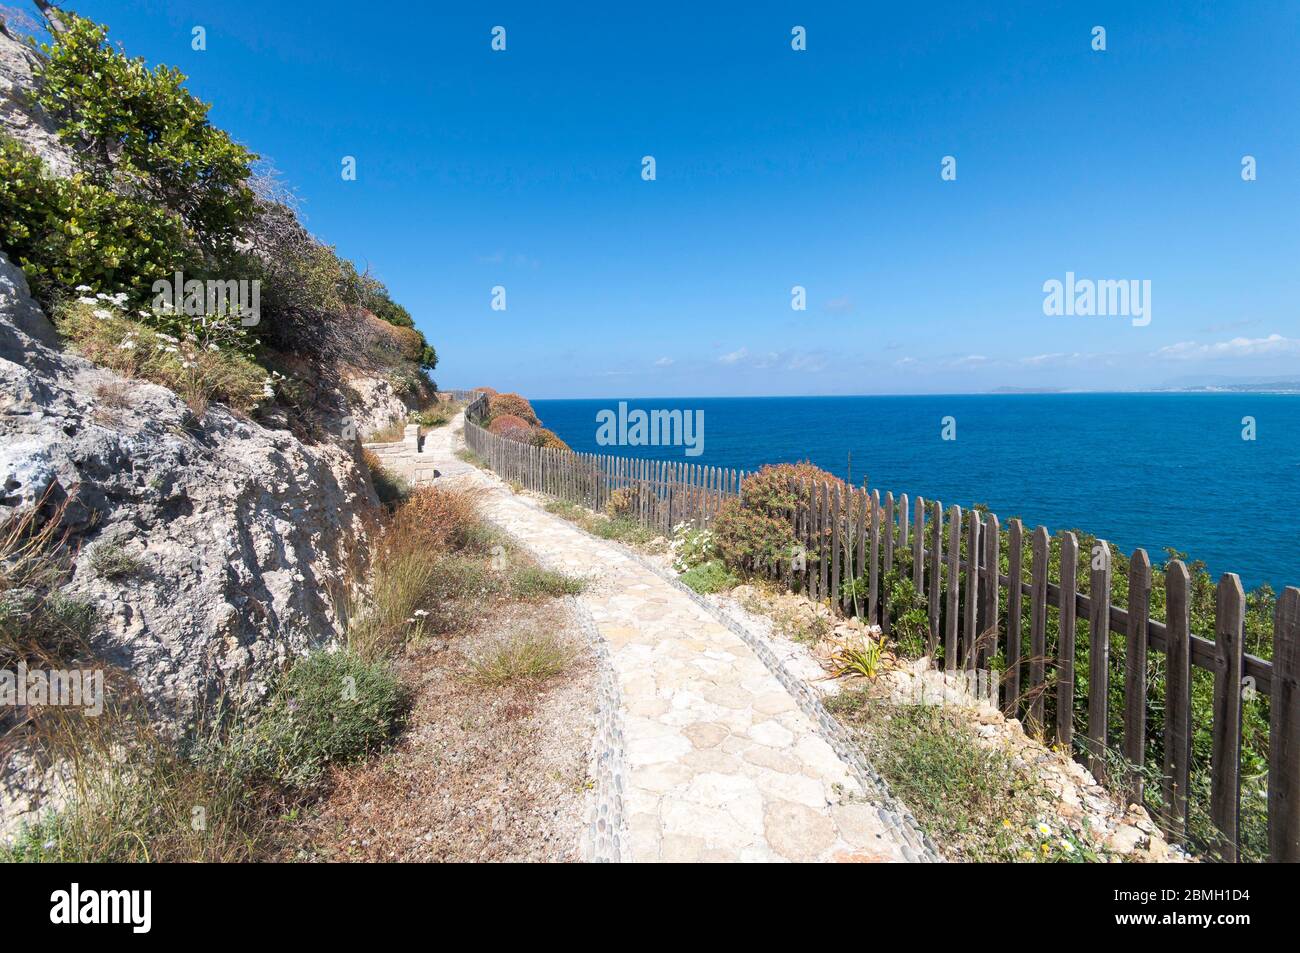 Klippenweg um Kolymvaria, Griechenland. Der schmale Pfad schlängelt sich entlang der steilen Klippen. Ein Tor erlaubt dem Wanderer eine kleine Kapelle zu erreichen. Stockfoto